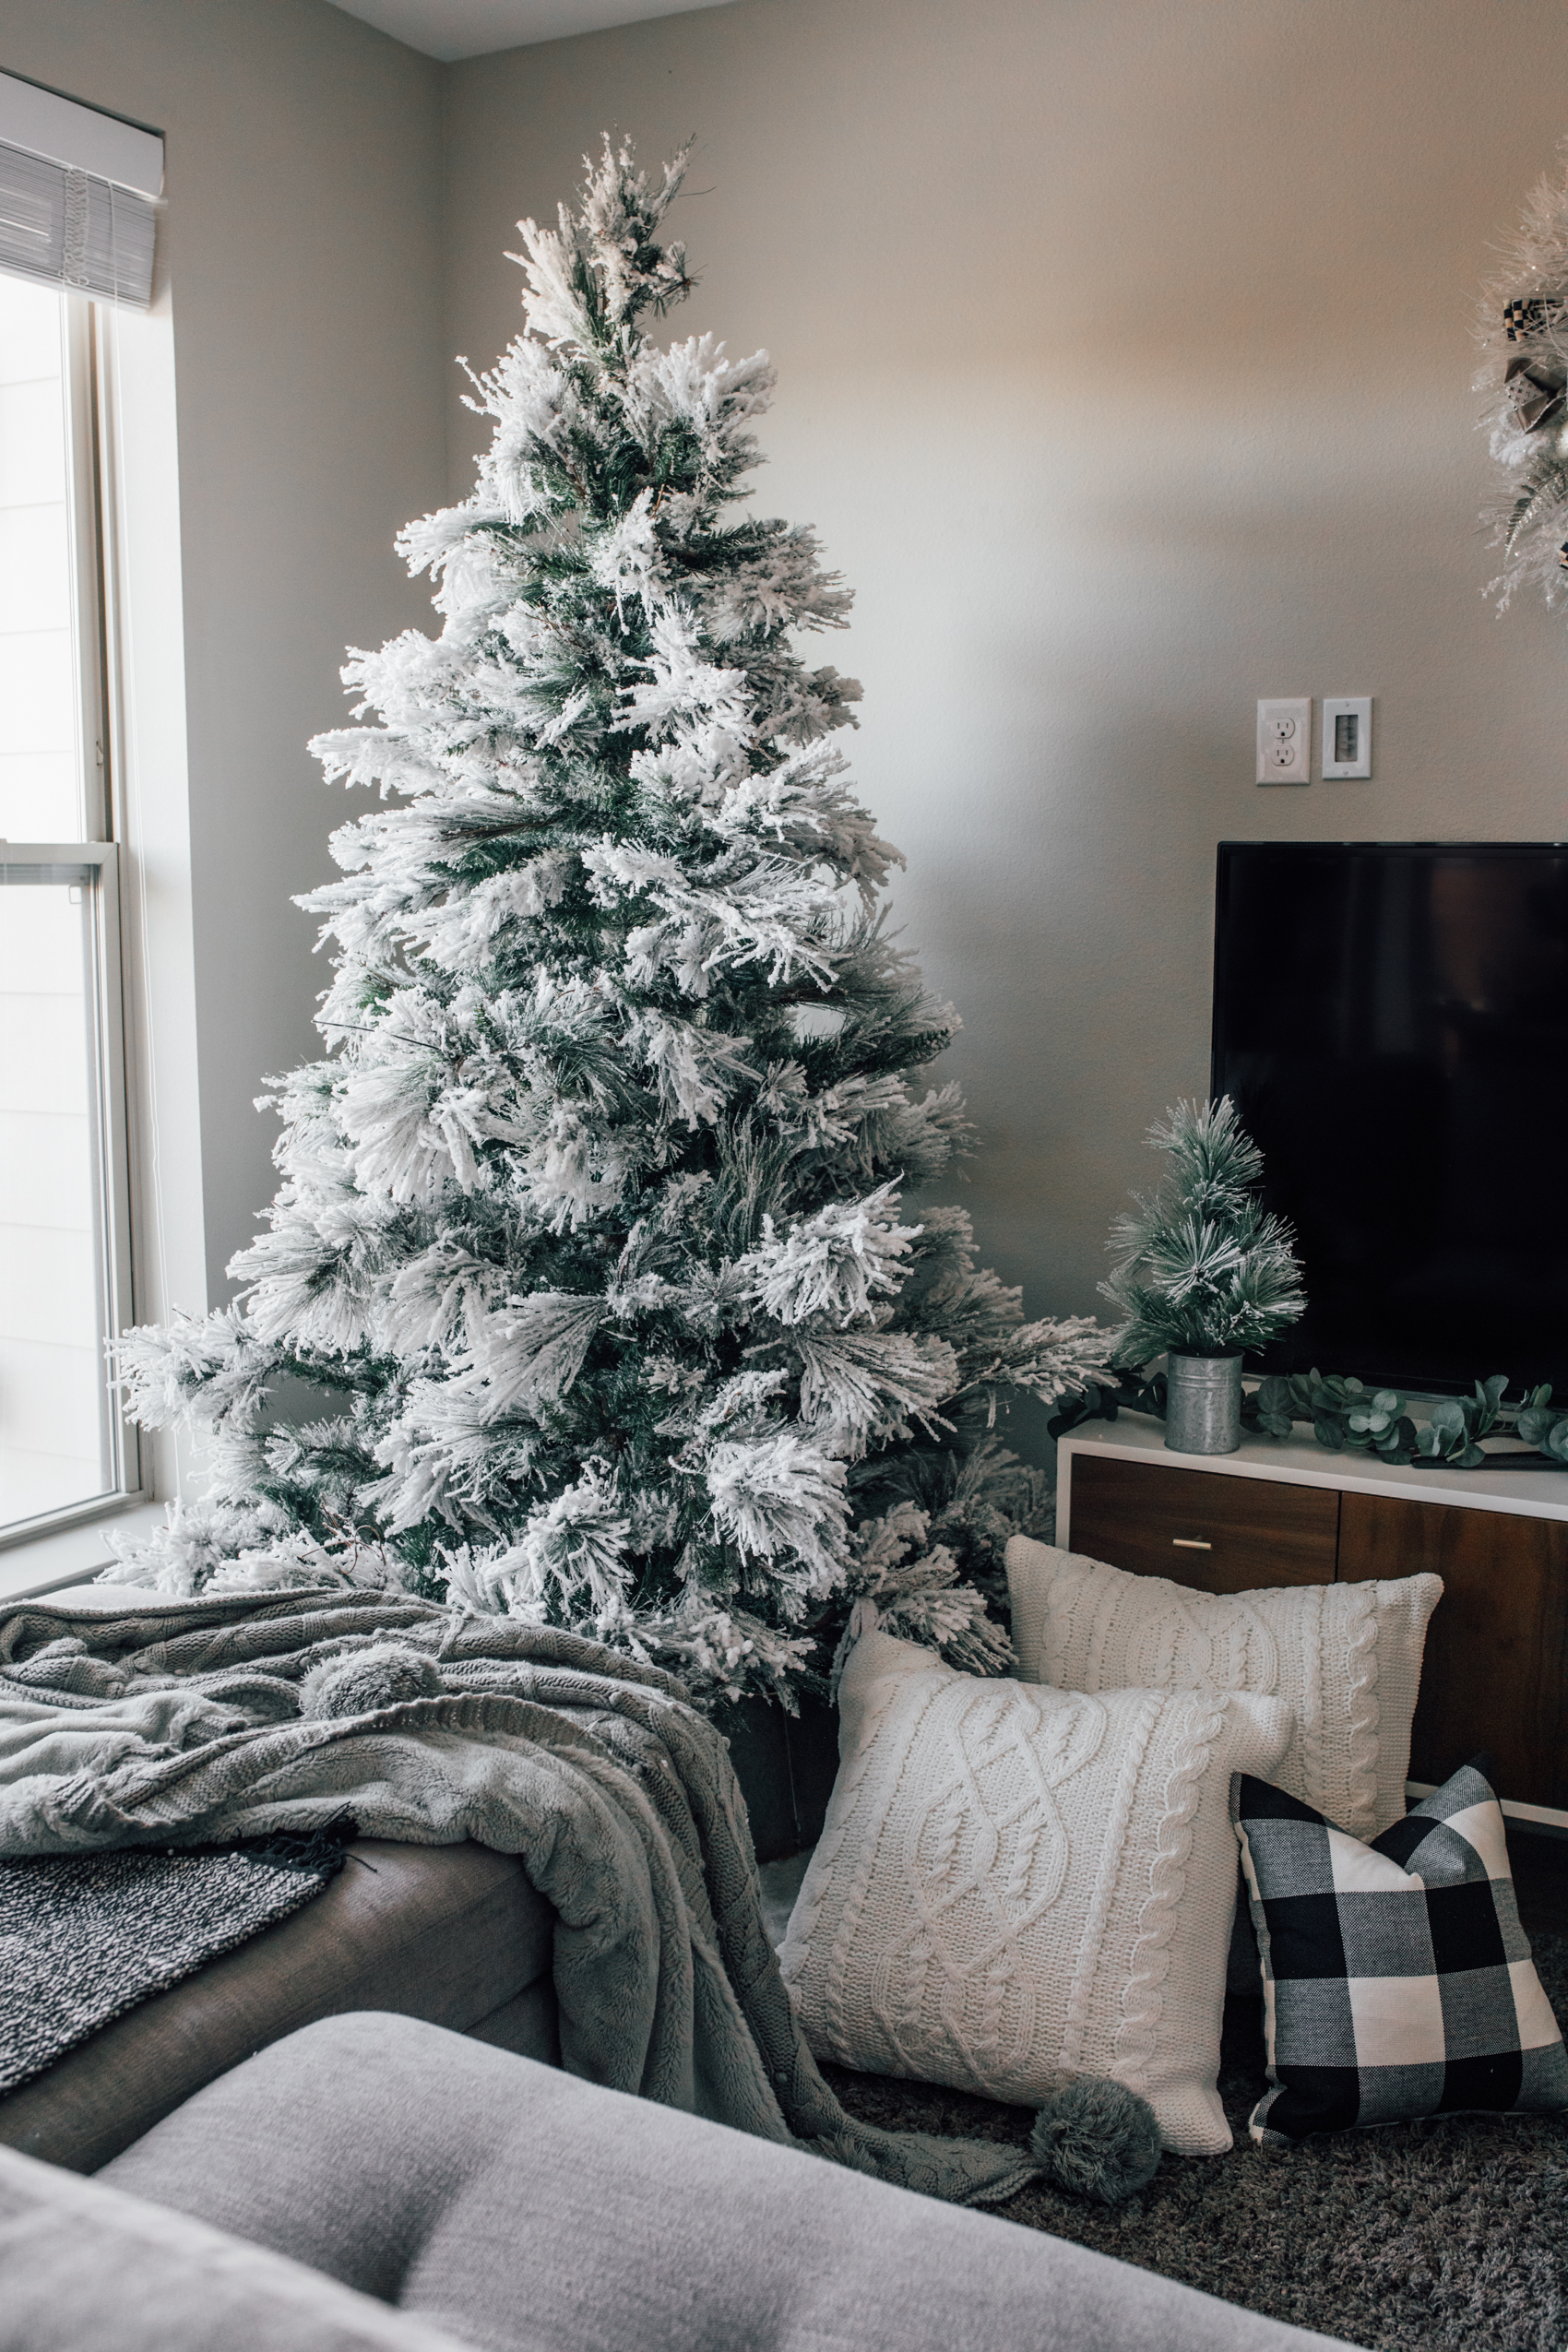 Flocked Christmas Tree decor ideas with chenille pillows, buffalo plaid and fleece